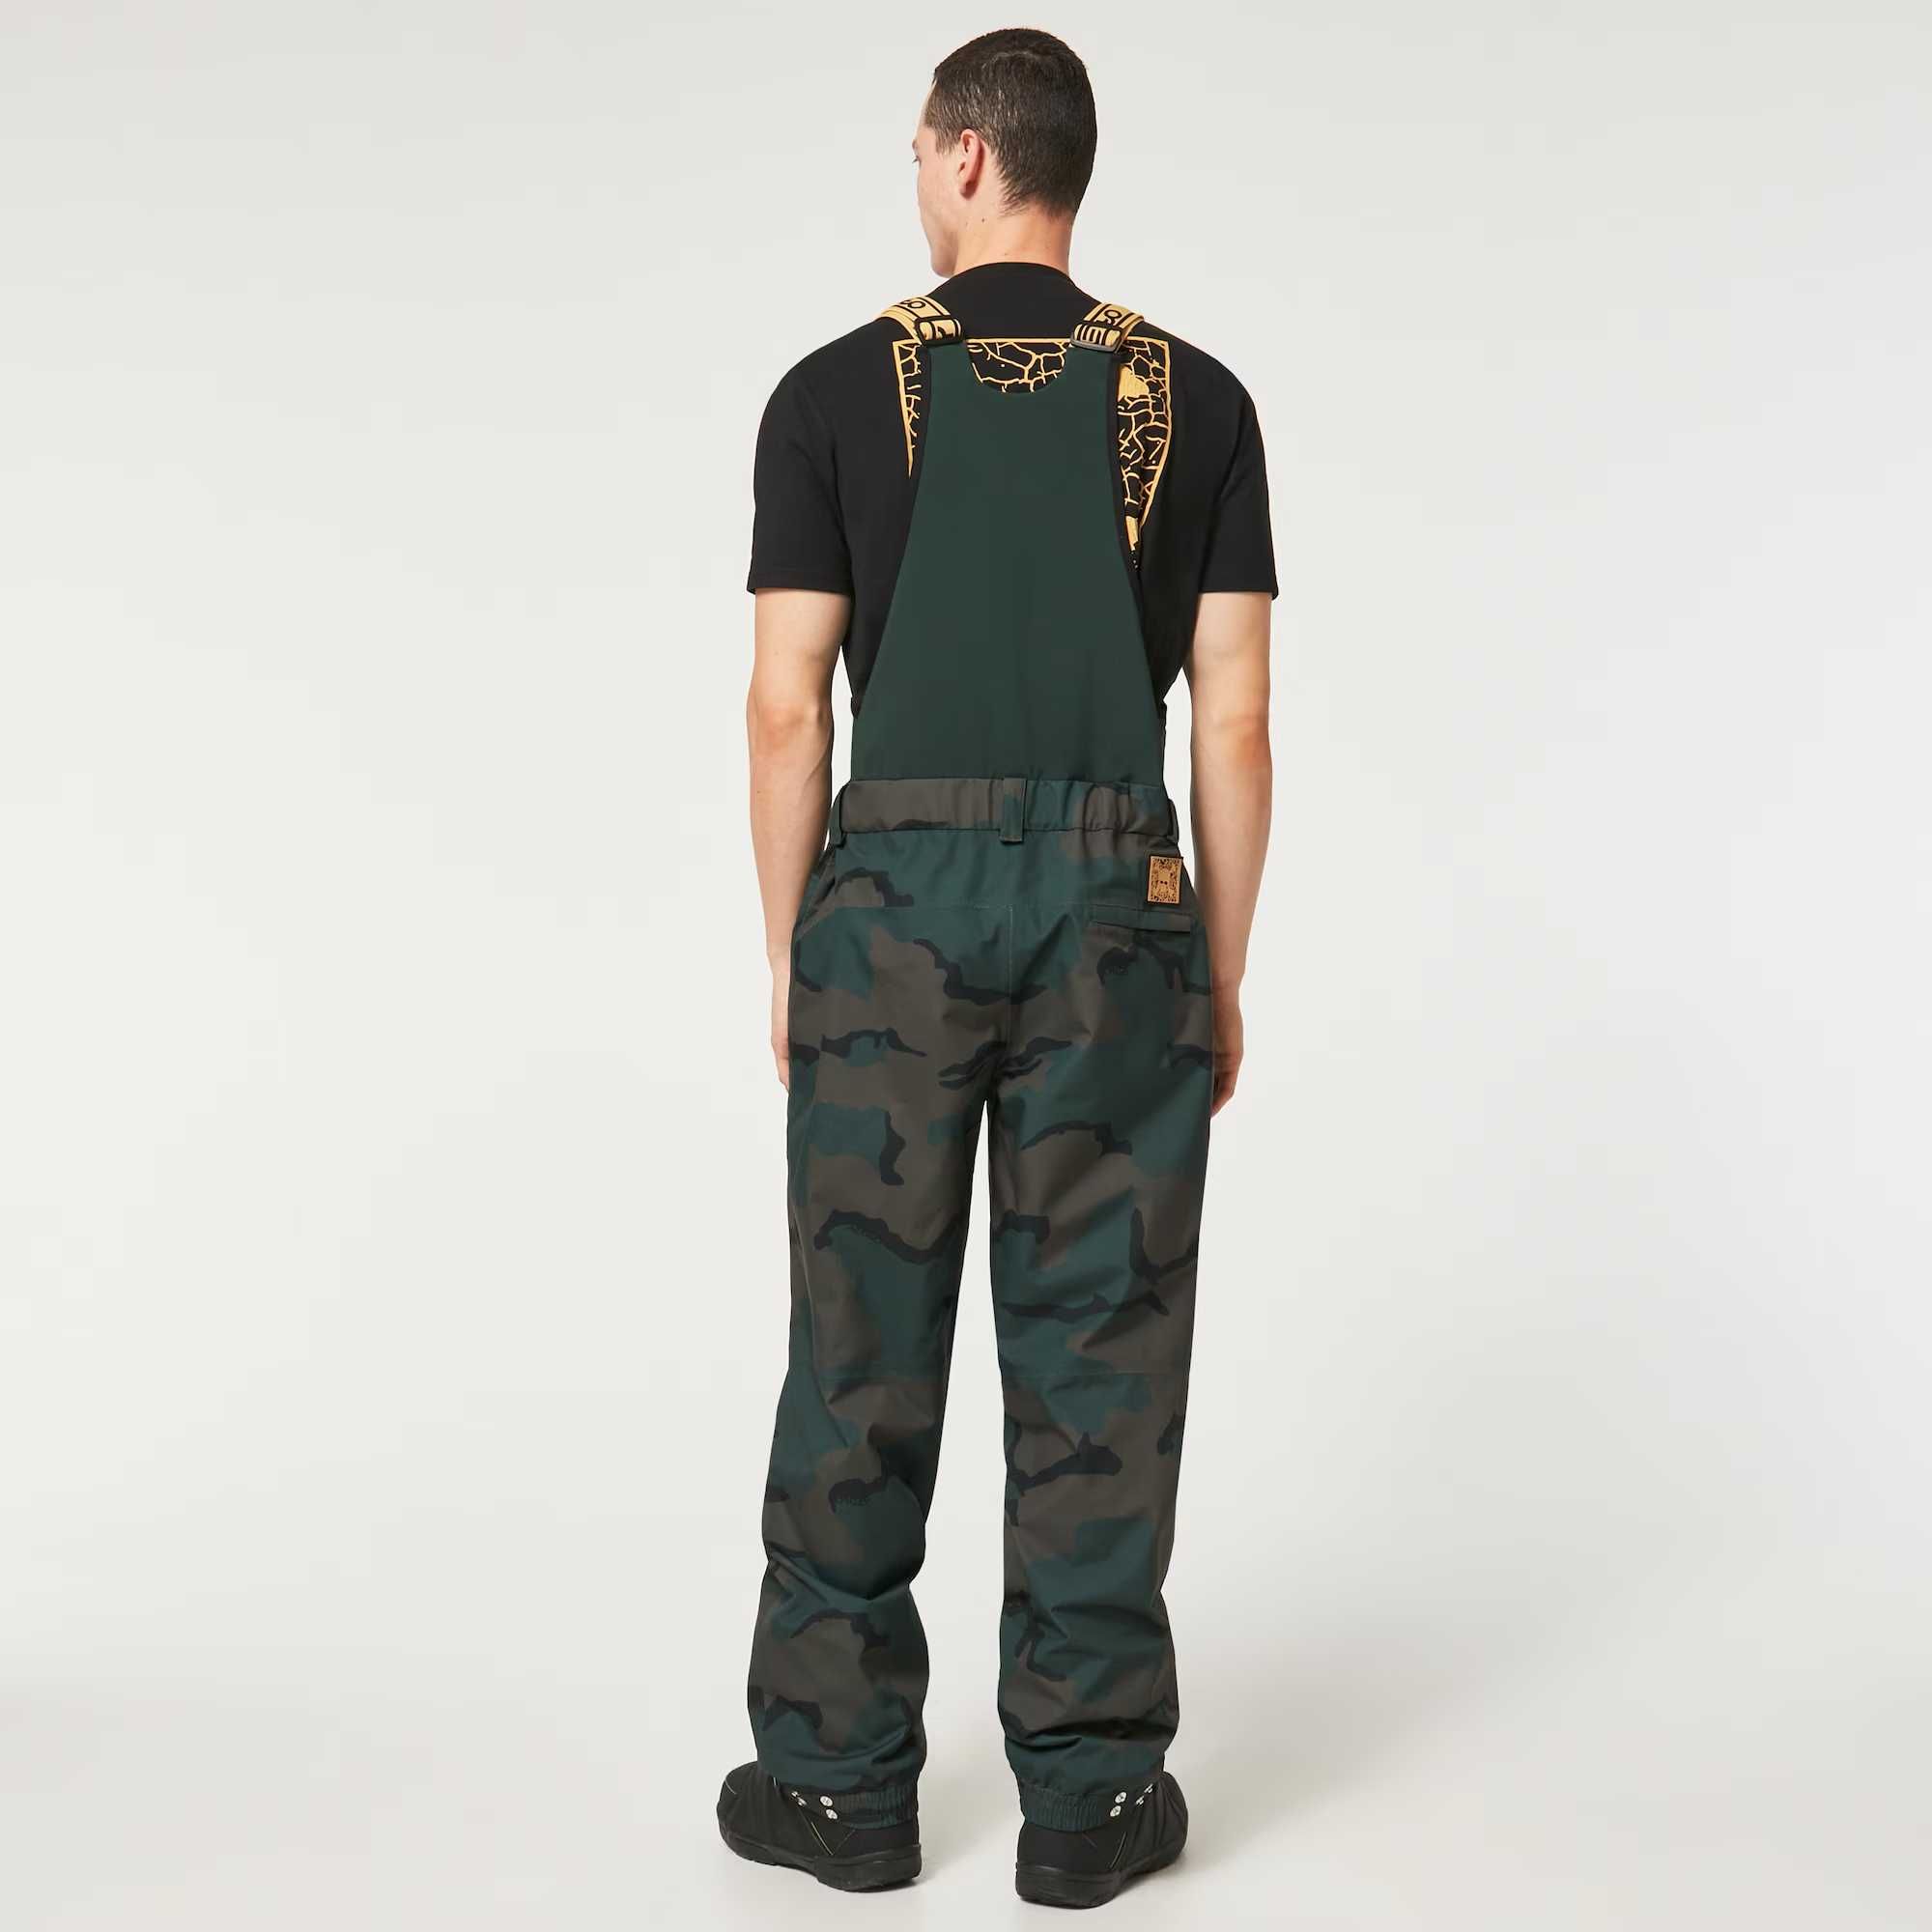 Новые штаны-комбинезон Oakley Tc Gunn 2.0 Rc Bib из США